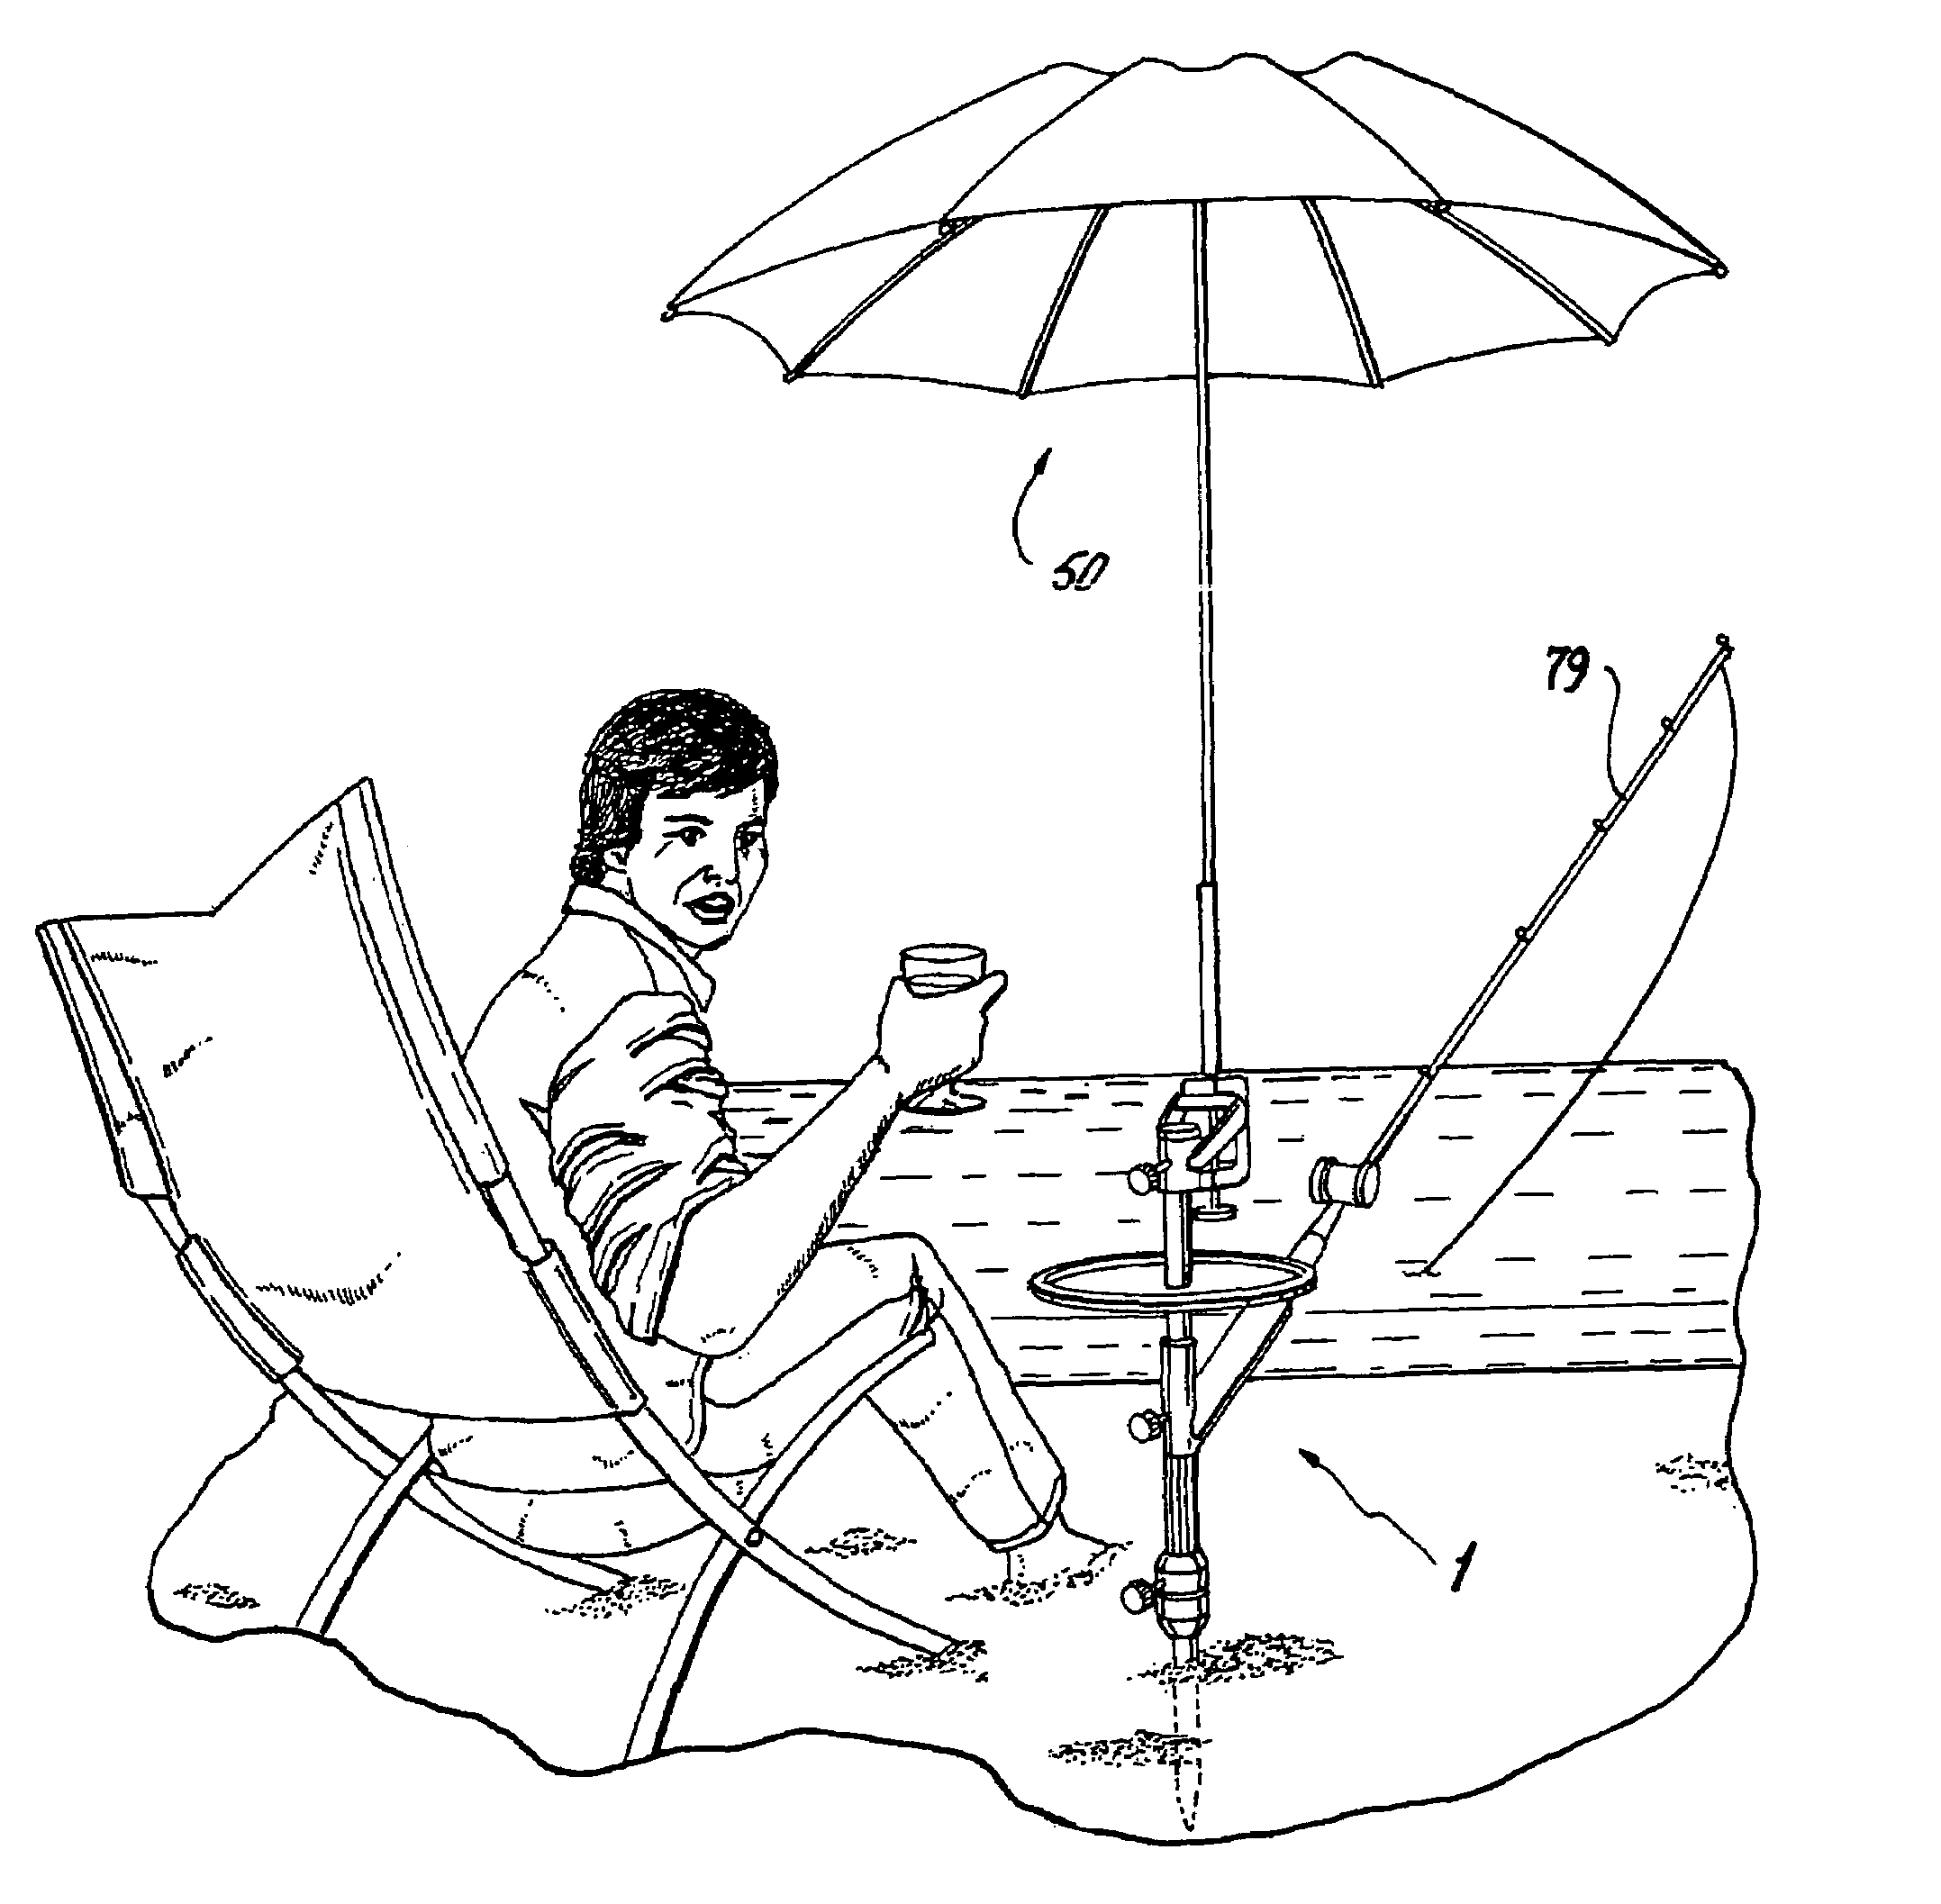 Multi-mode beach umbrella anchor